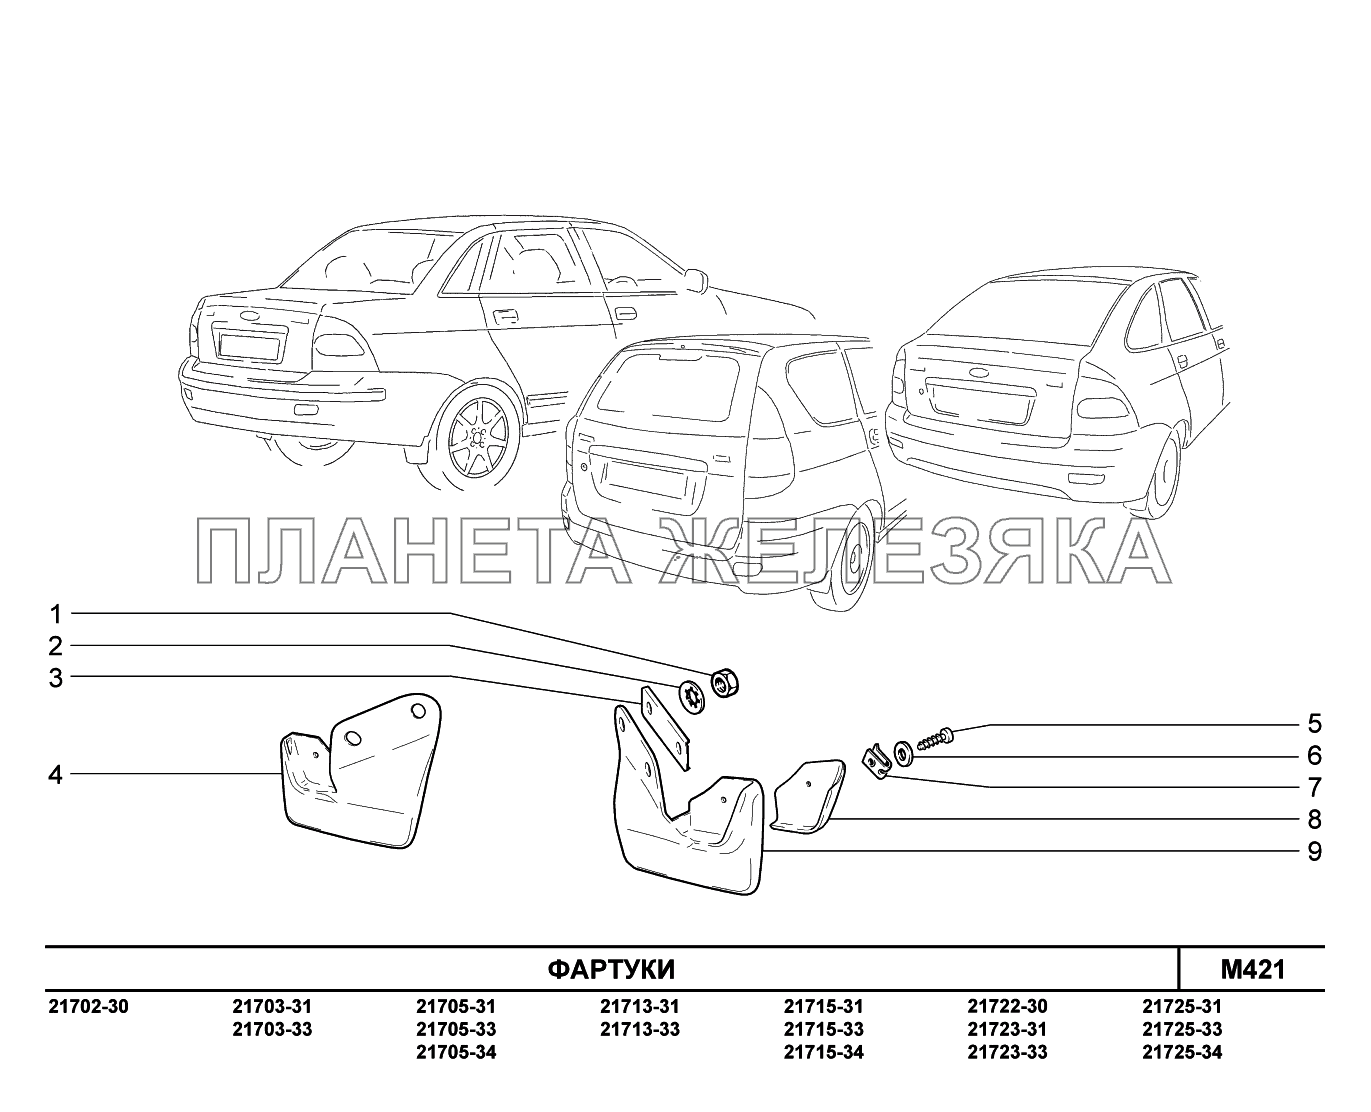 M421. Фартуки ВАЗ-2170 